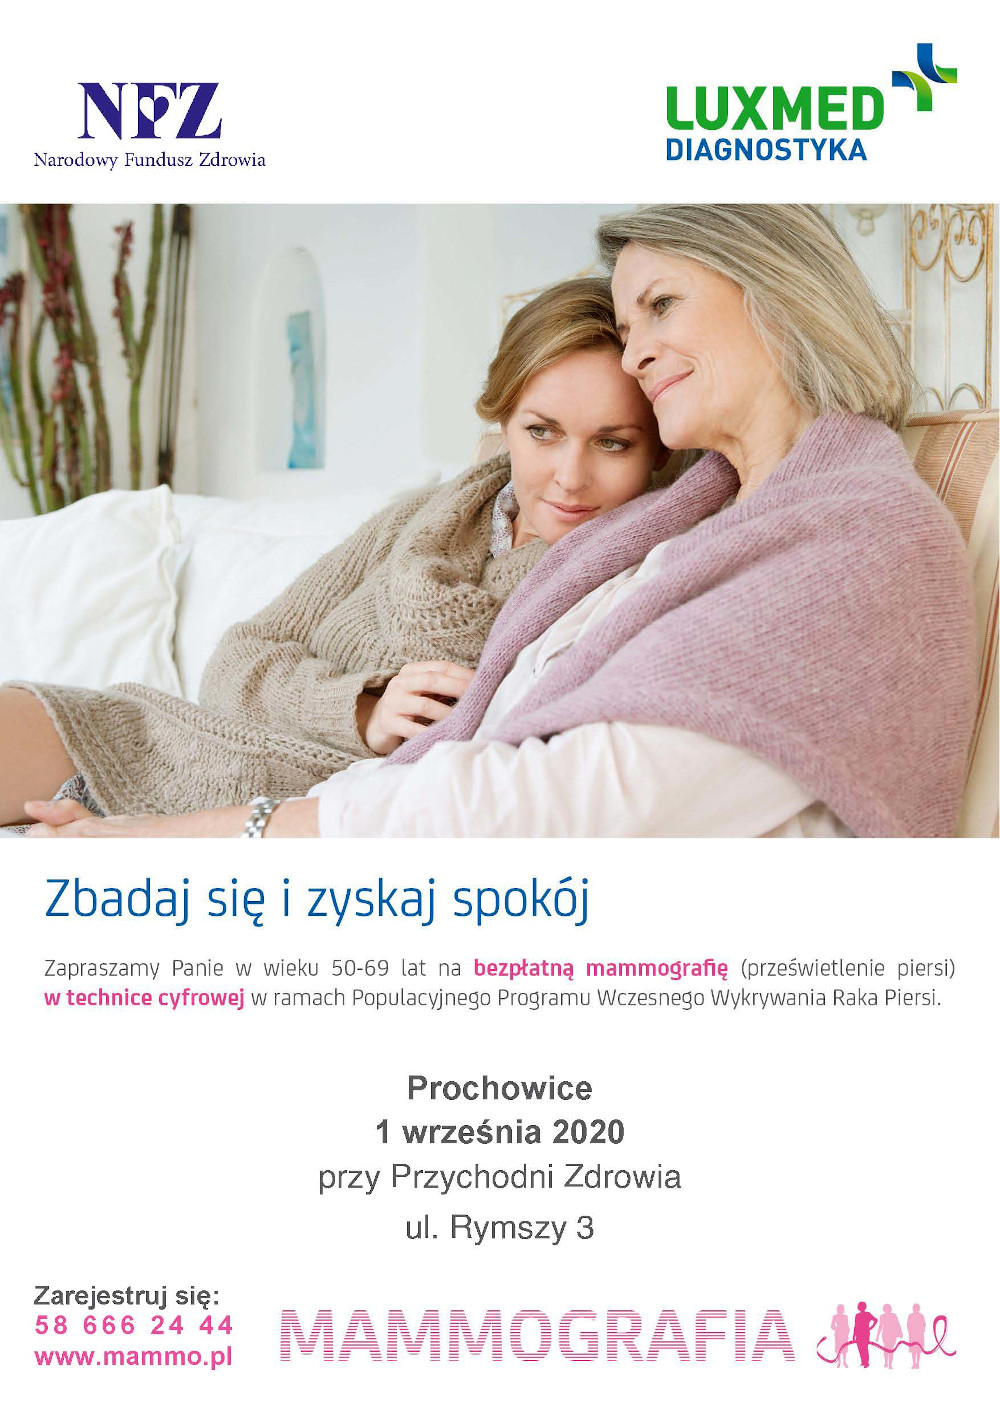 Plakat:Badania mammograficzne w Prochowicach, 1 września 2020